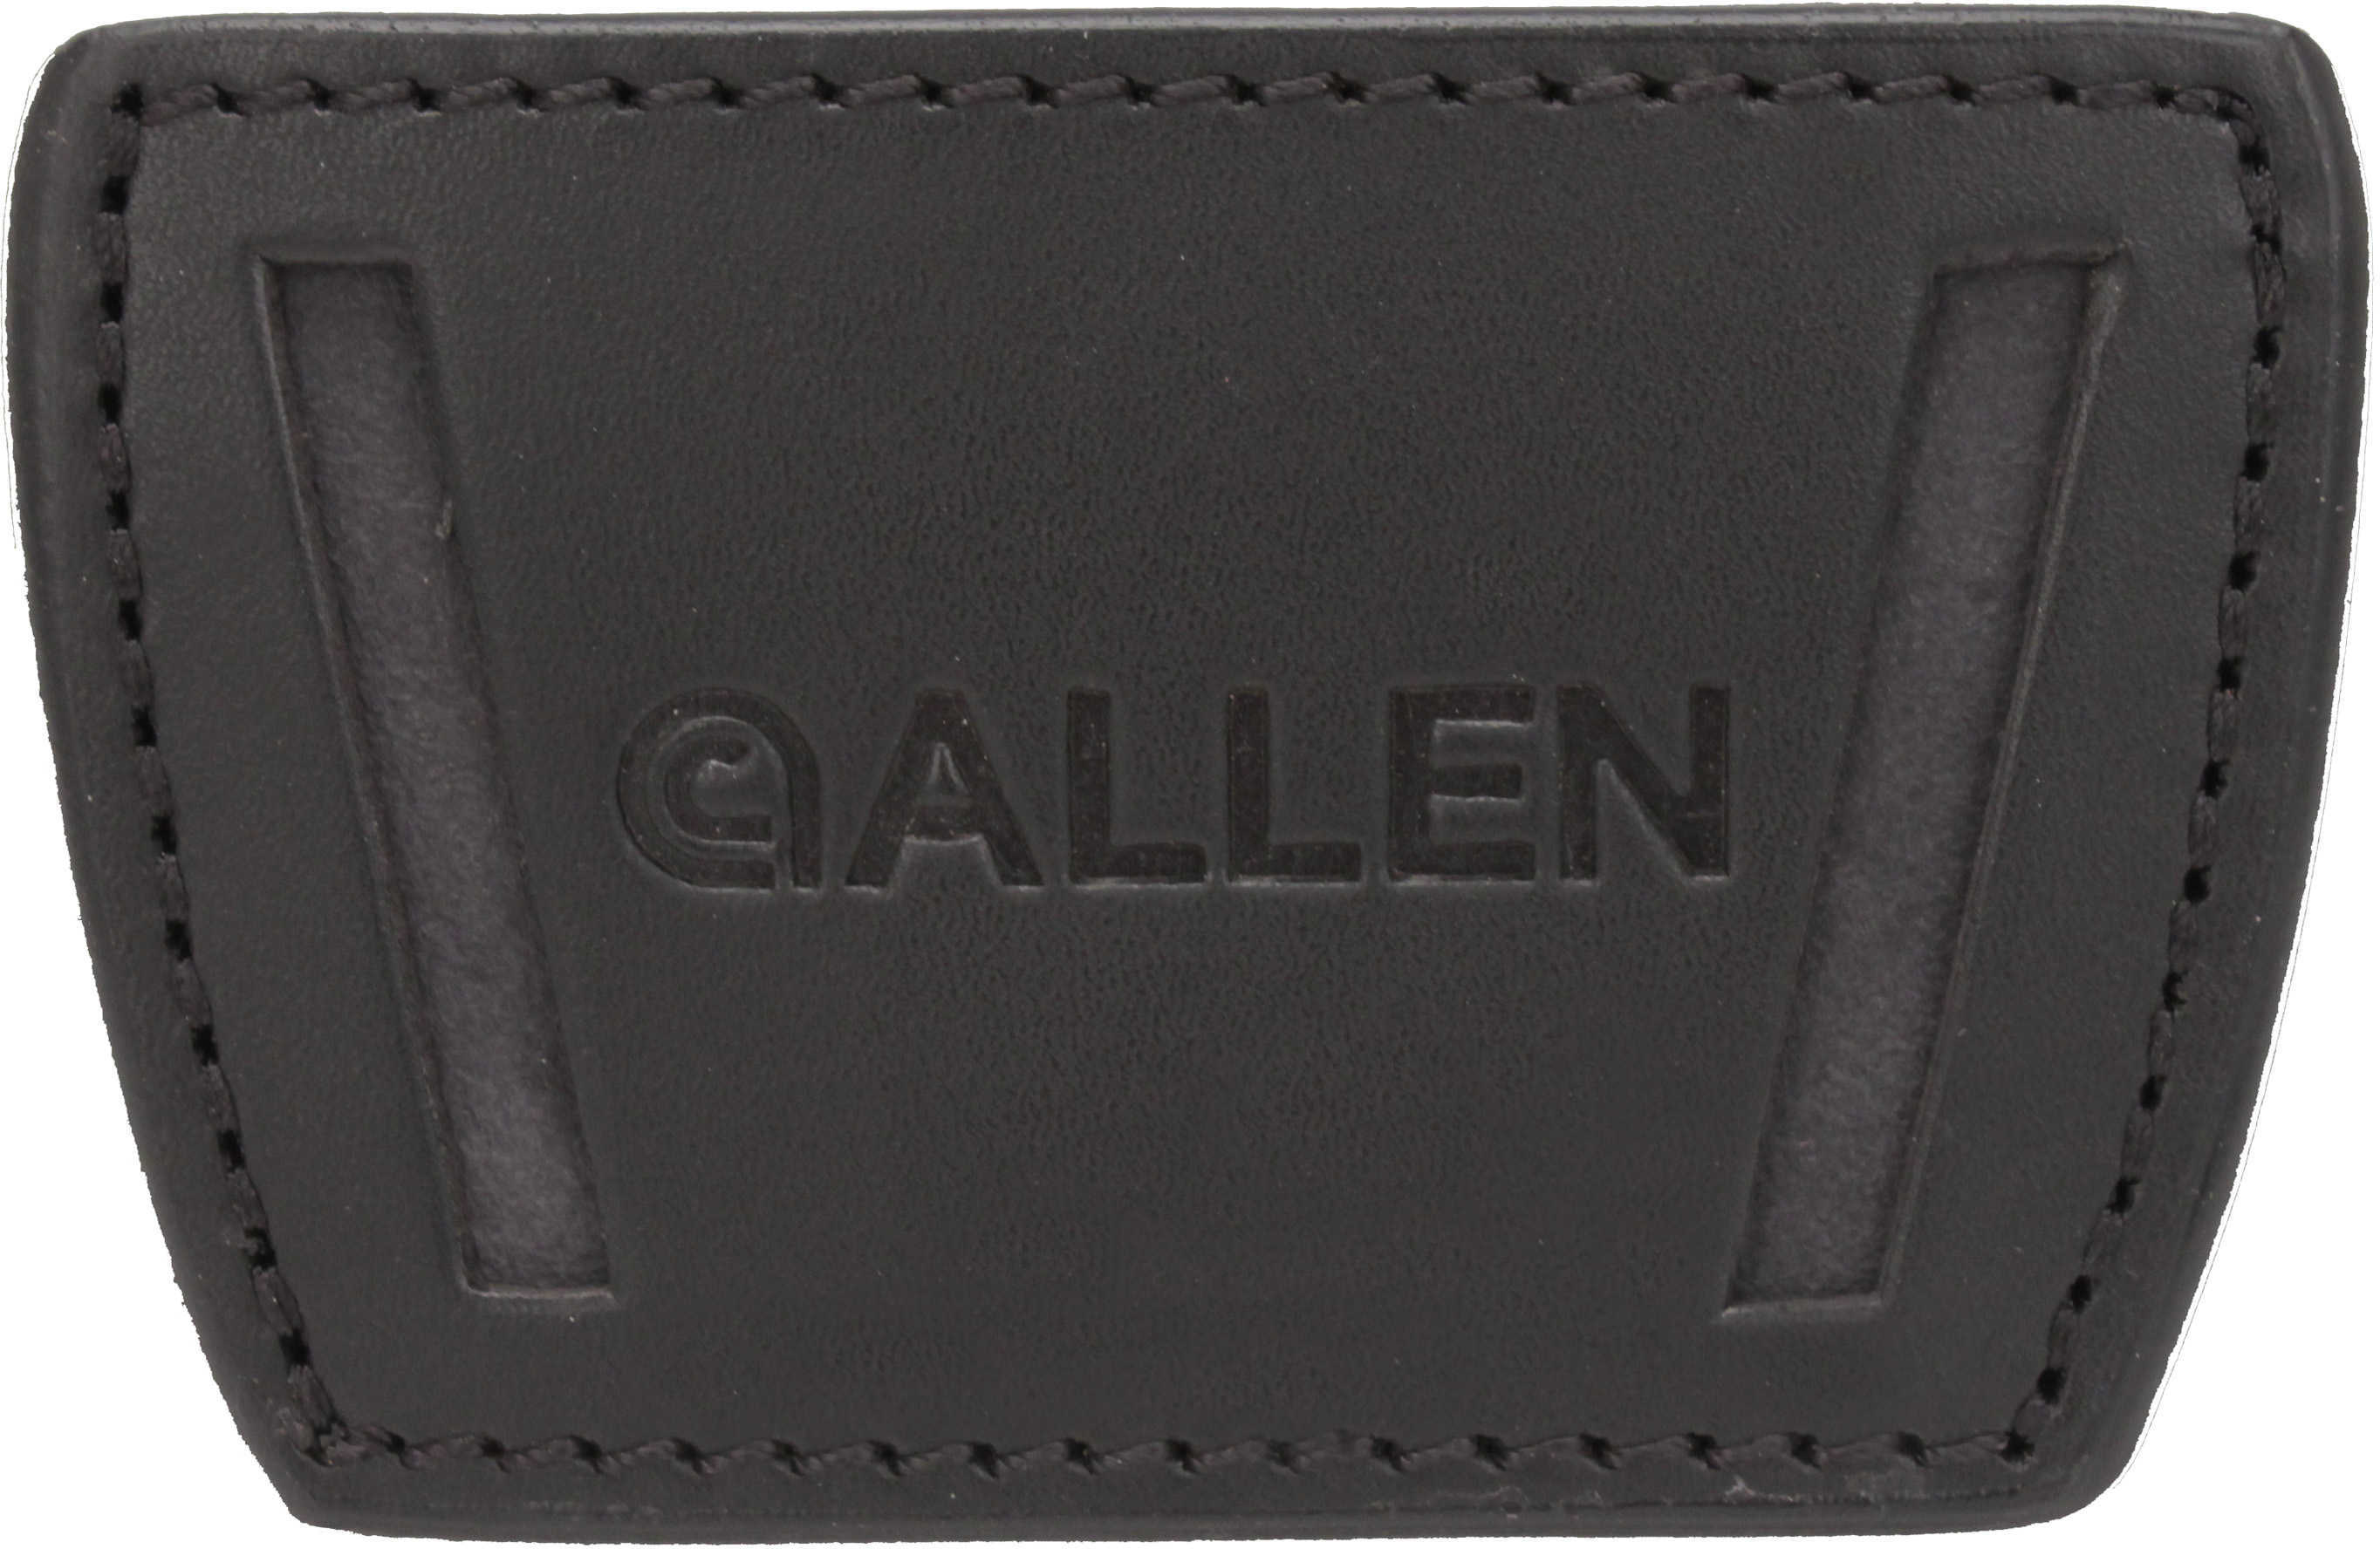 Allen Cases Glenwood Belt Slide Leather Holster Small Black 44830-img-1